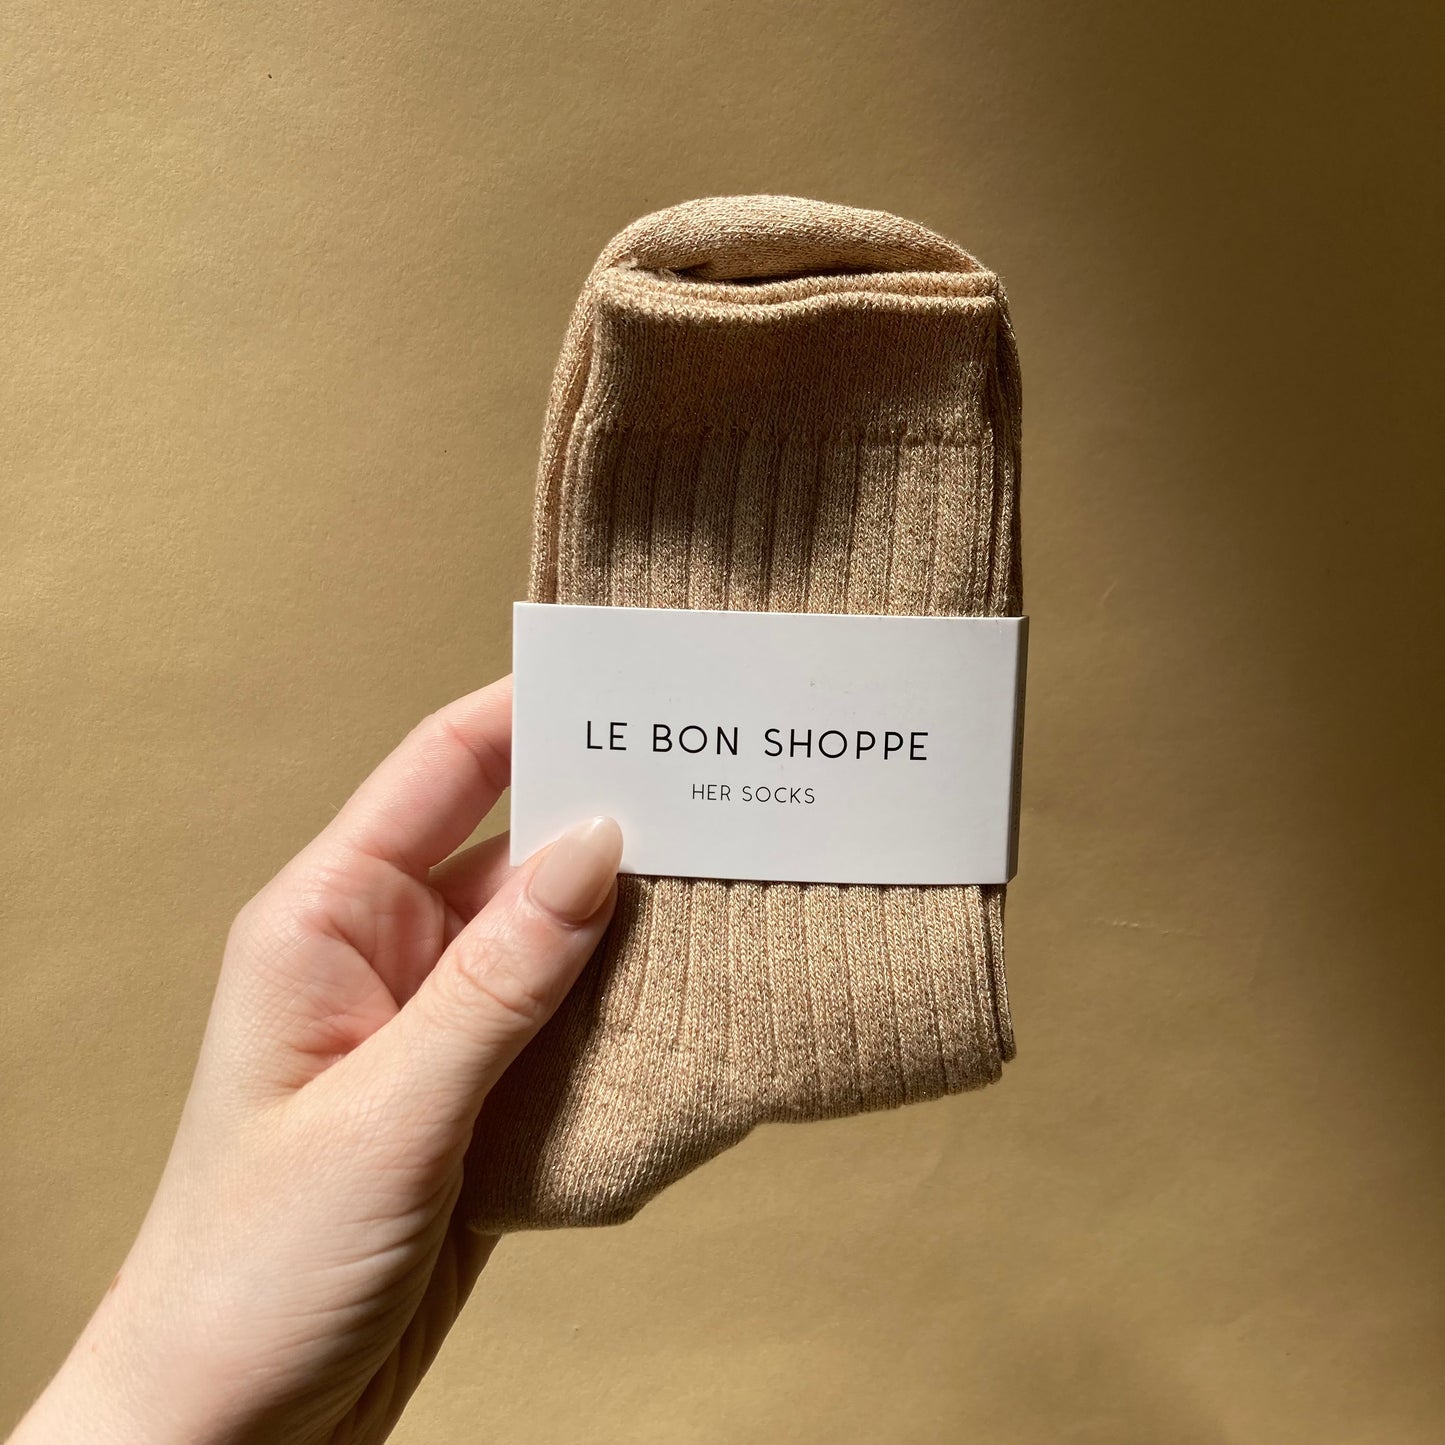 le bon shoppe / her socks